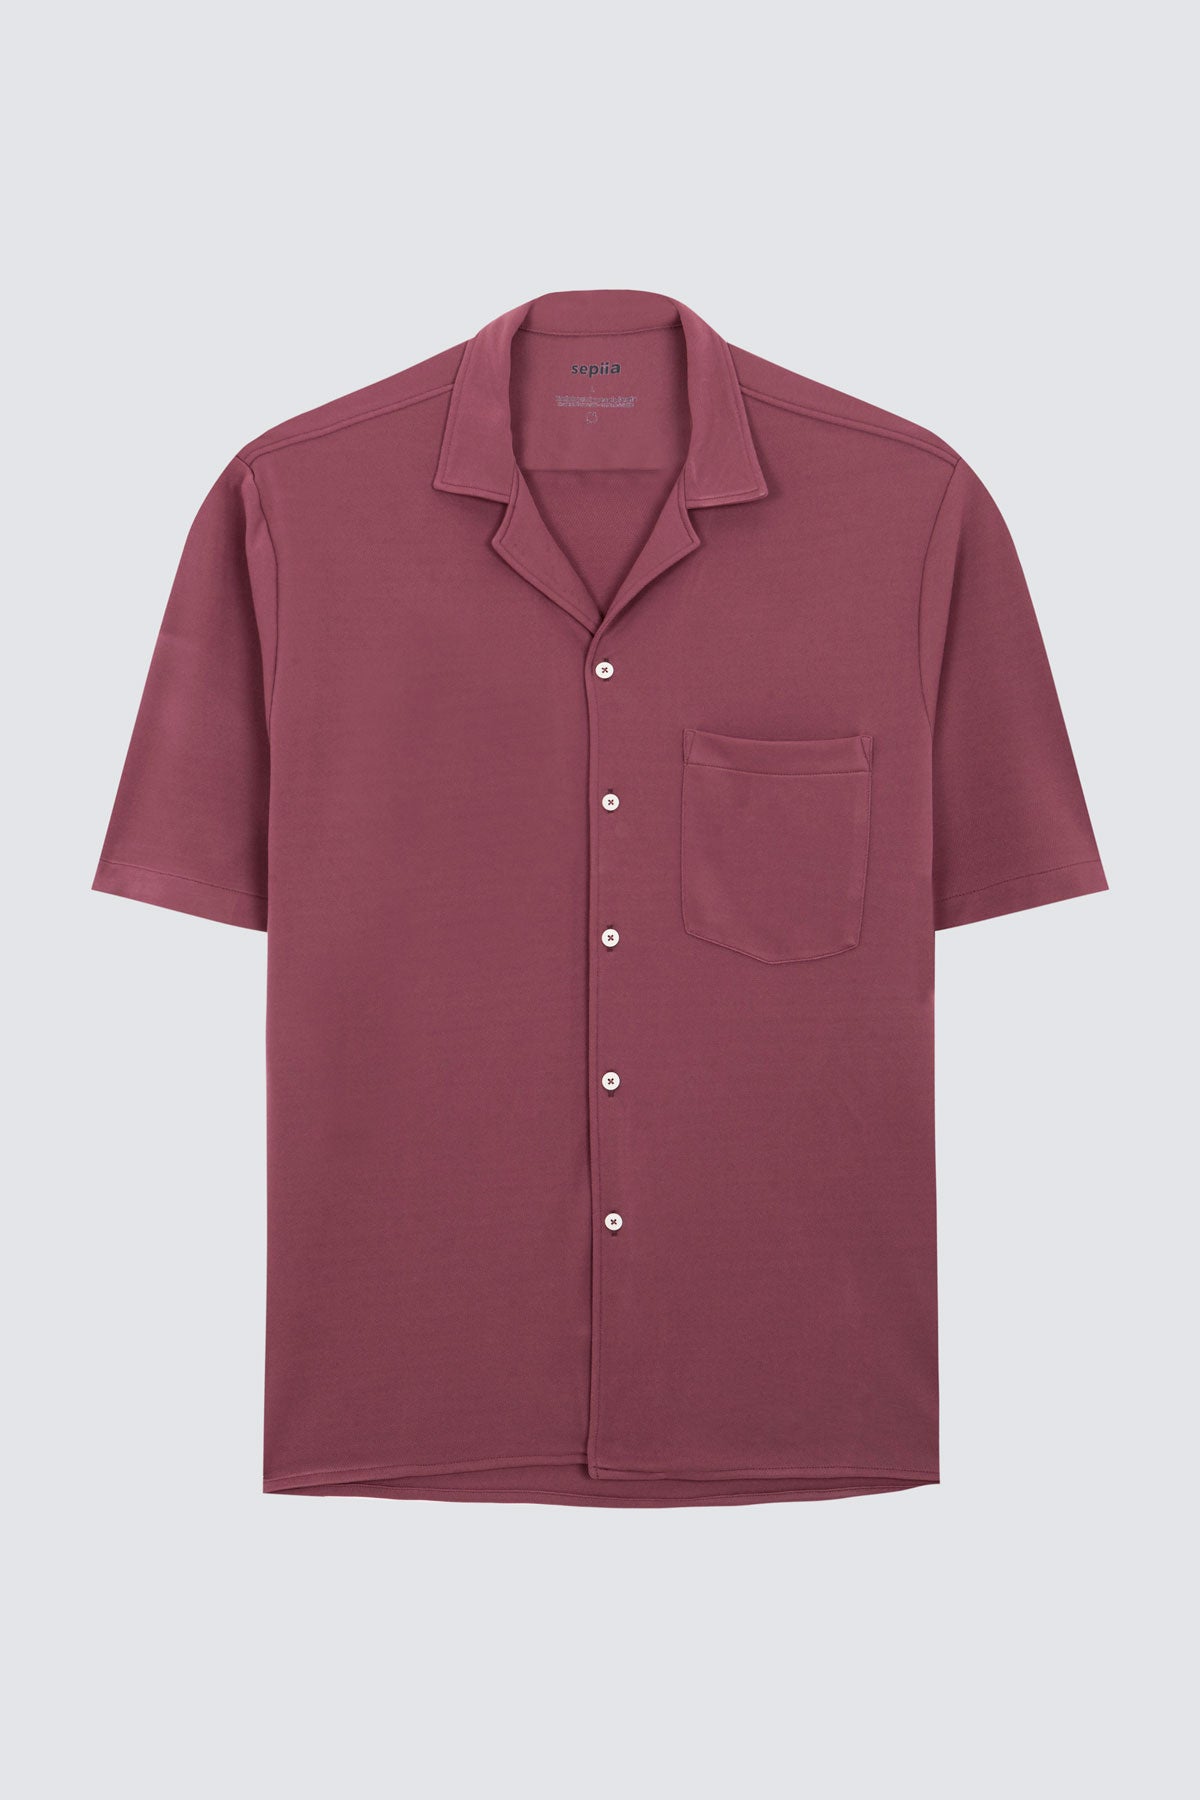 Camisa manga corta sedna de Sepiia, fresca y elegante, perfecta para el verano. Foto prenda en plano